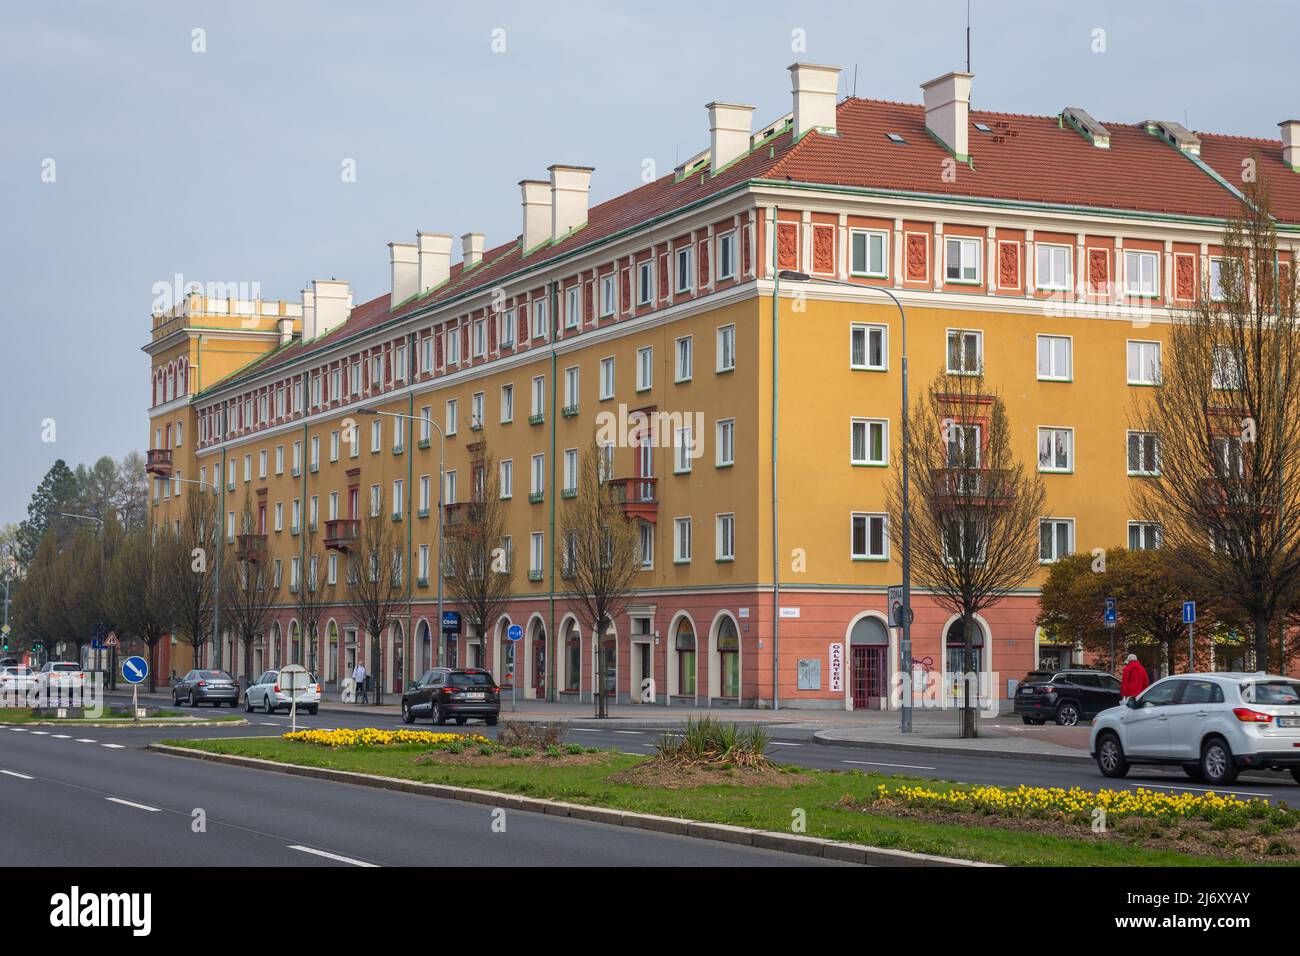 Havirov, Repubblica Ceca, 20.04.2022, esempio di architettura in stile realismo socialista a Havirov, che è conosciuta come la città ceca più giovane Foto Stock